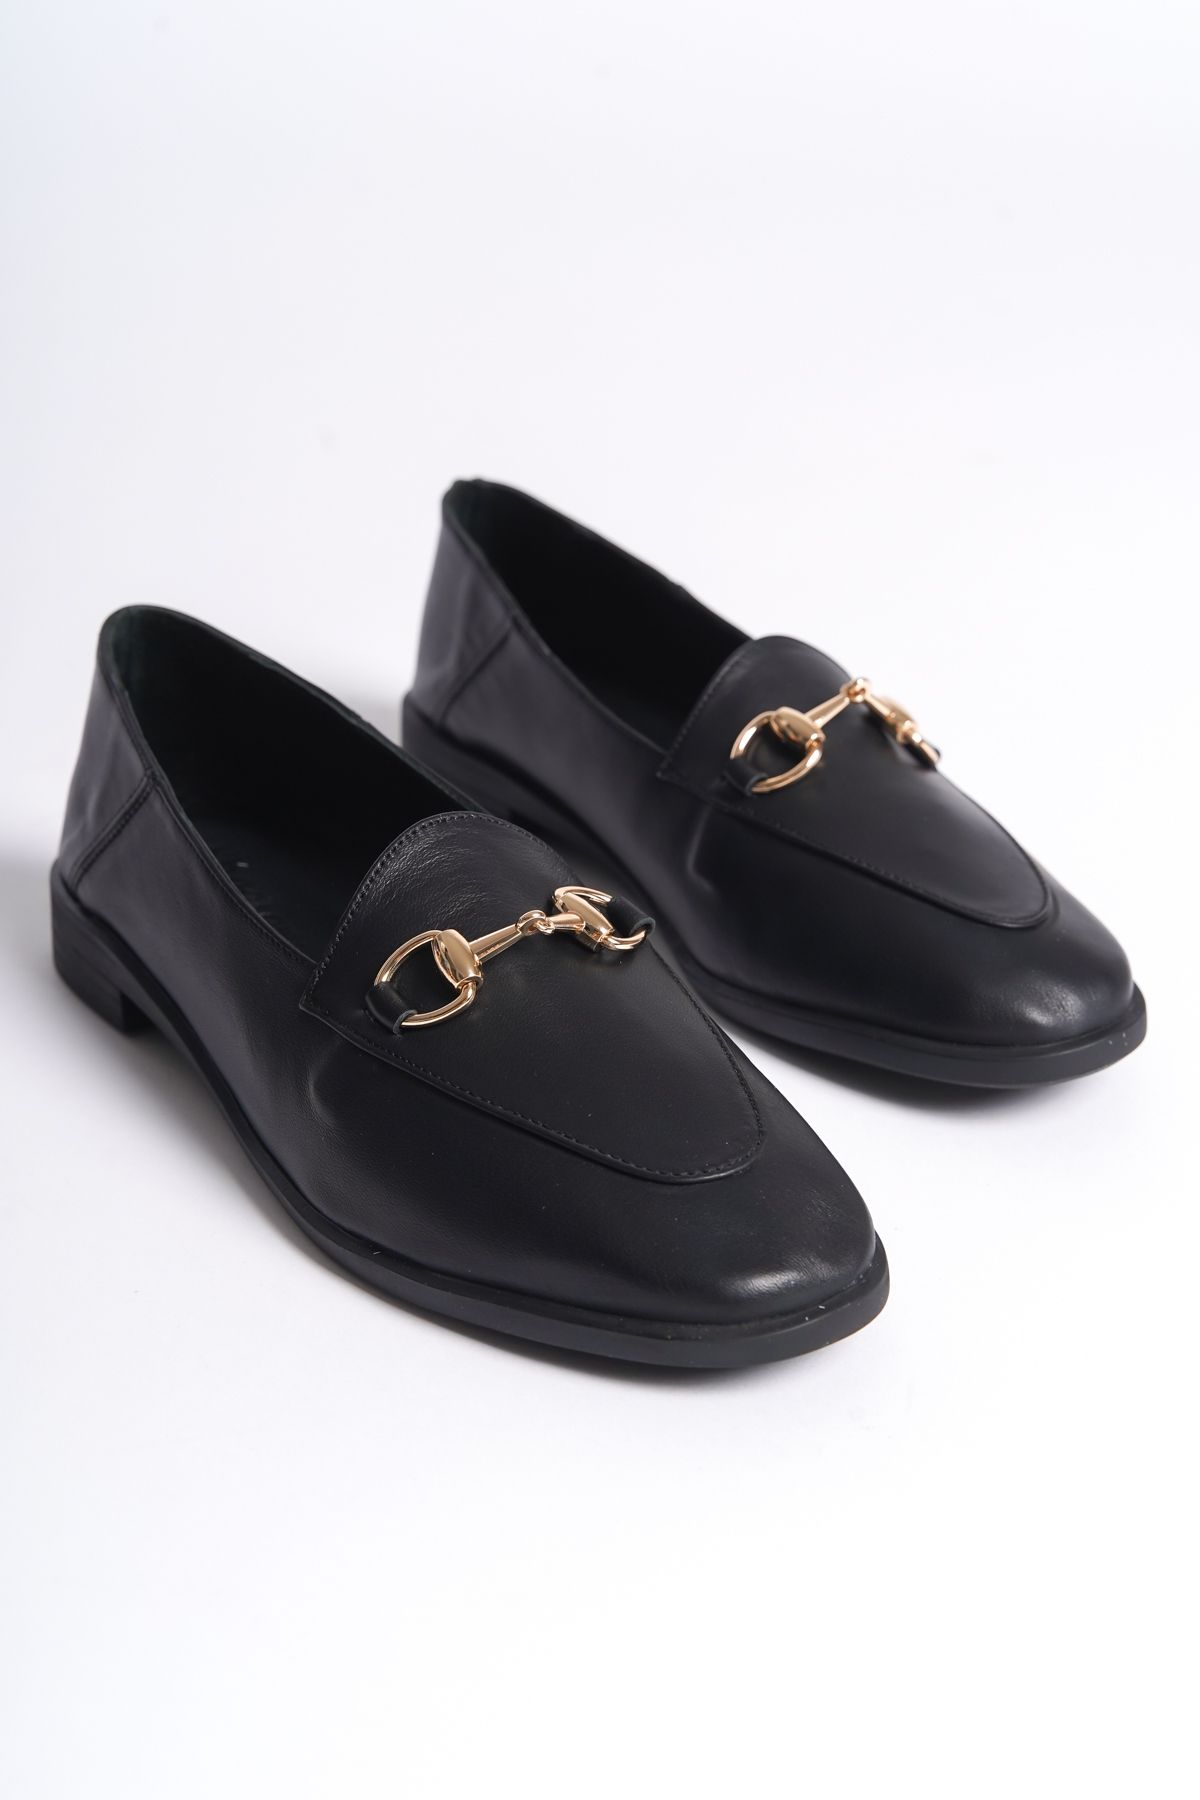 Shoesers Kadın Özel Tasarım Hakiki Deri Zarif Toka Detaylı Alçak Tabanlı Loafer Ayakkabı